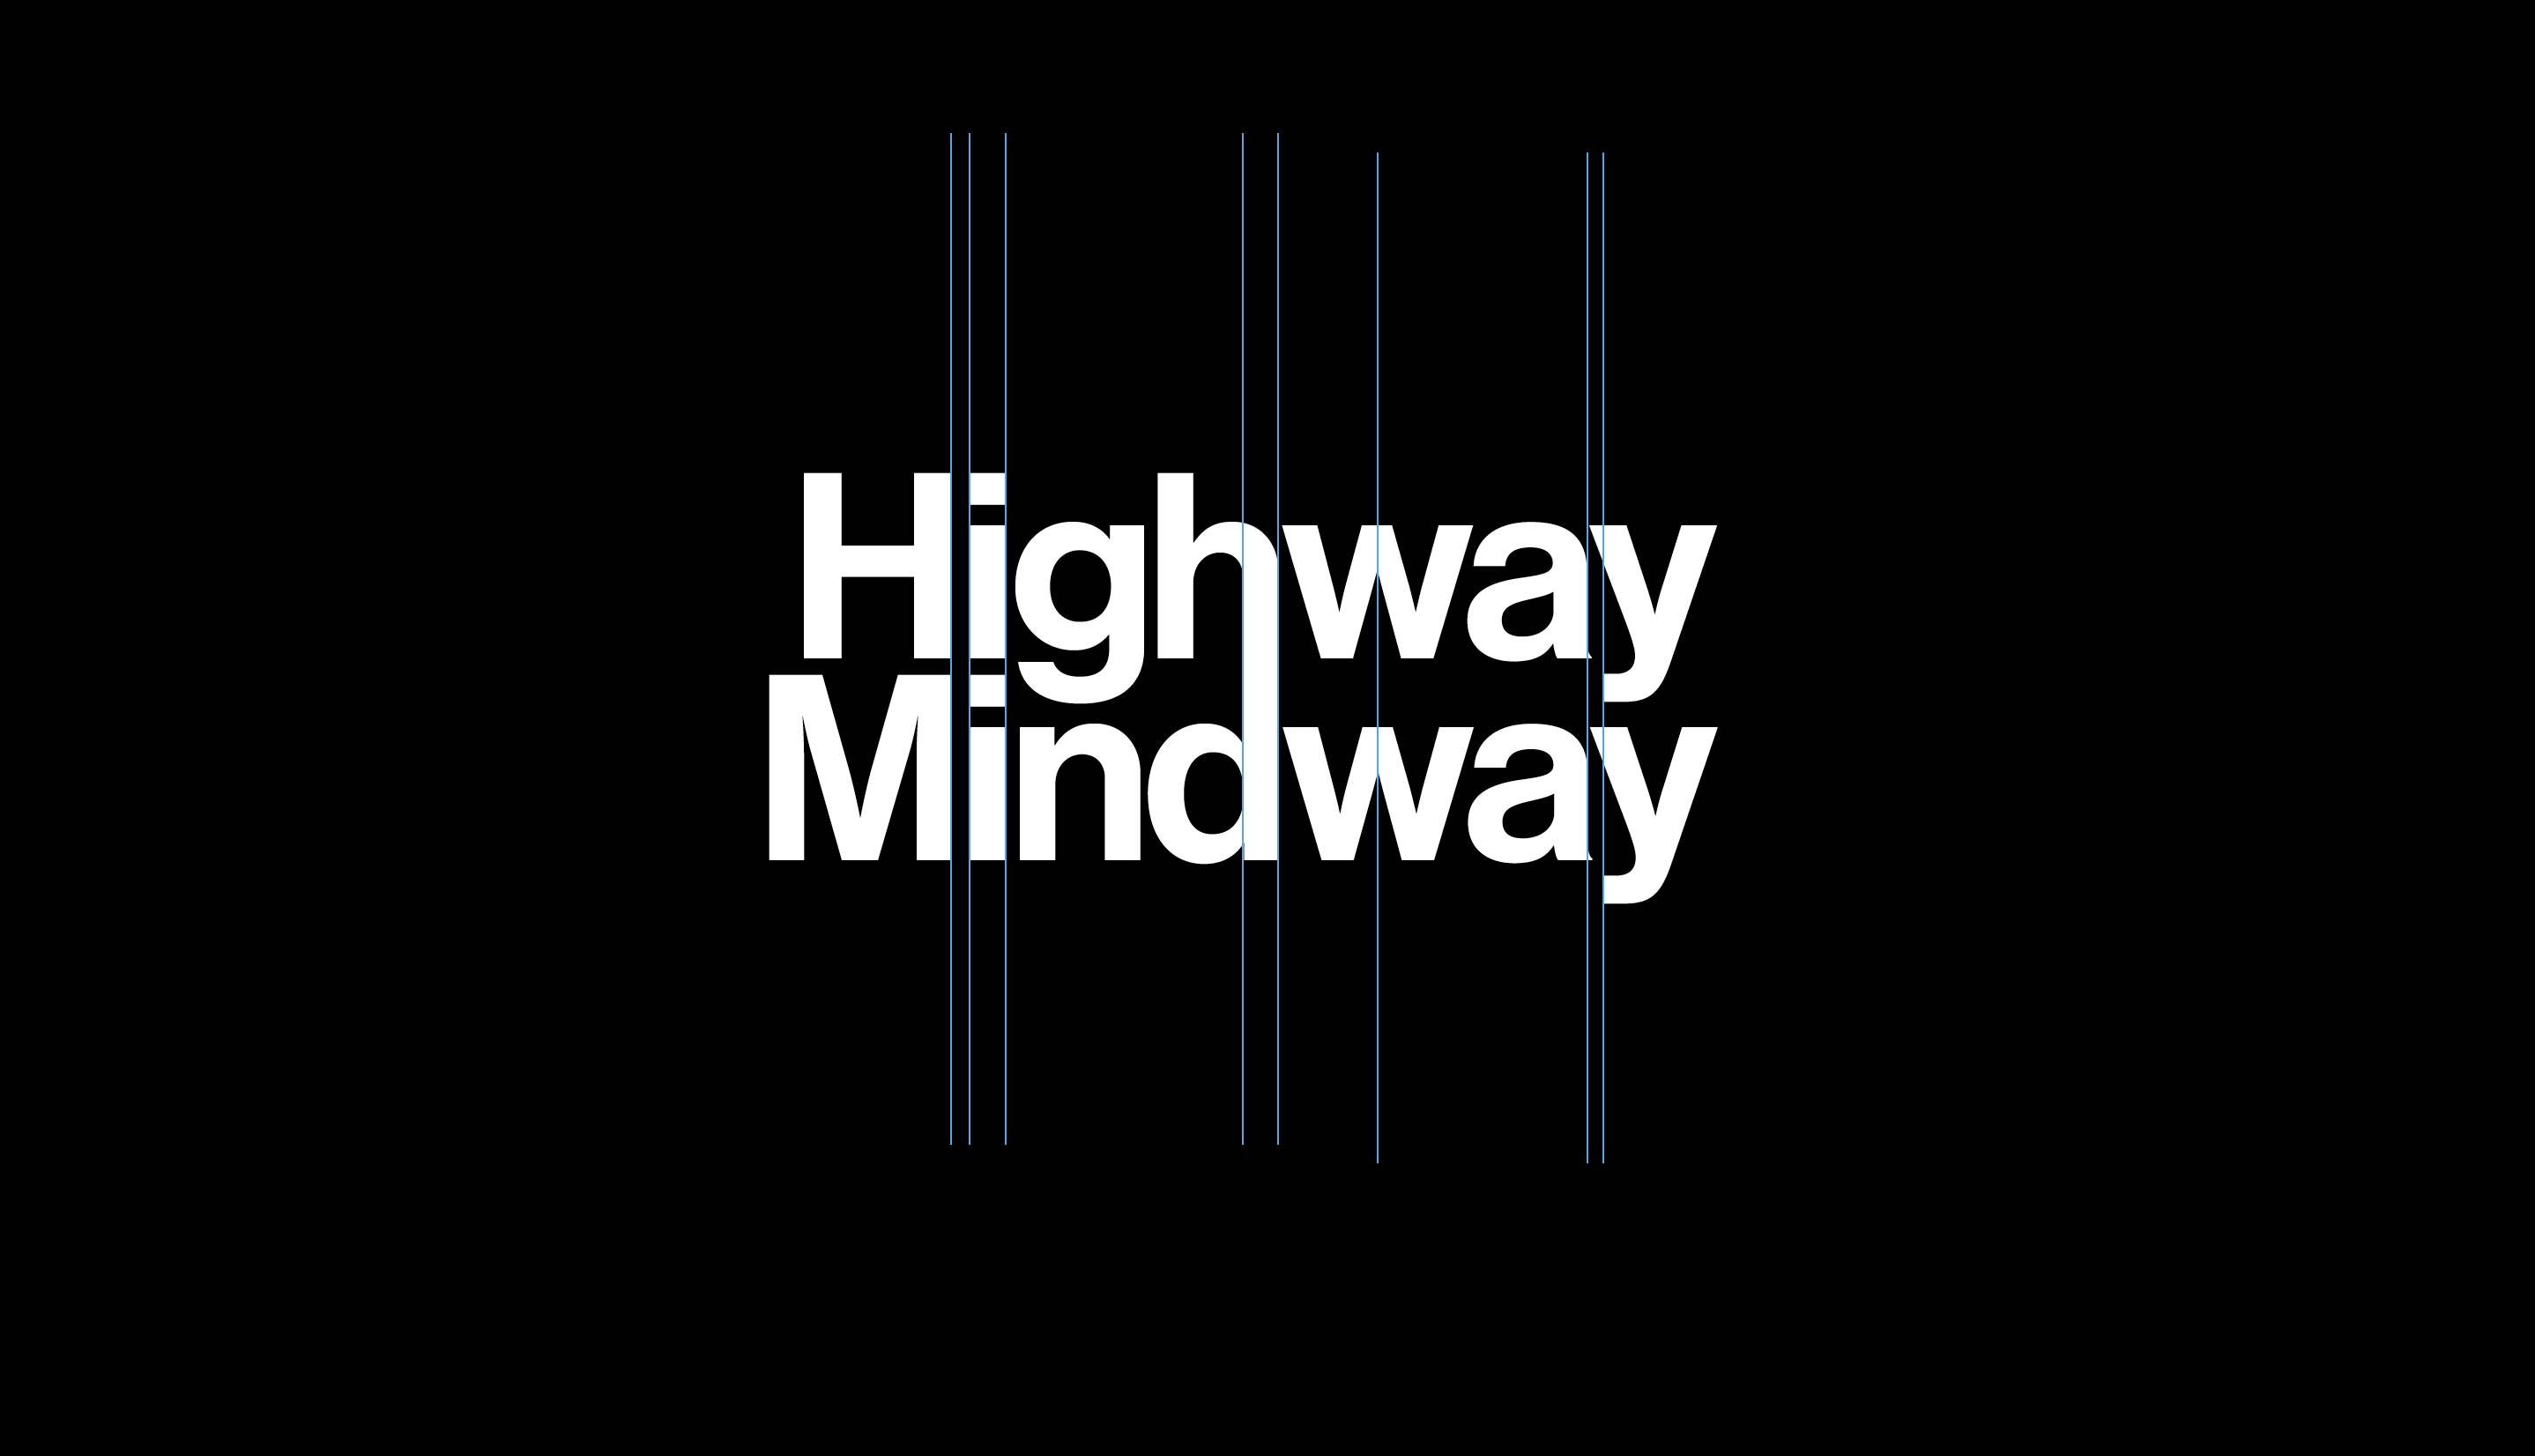 Highway Mindway